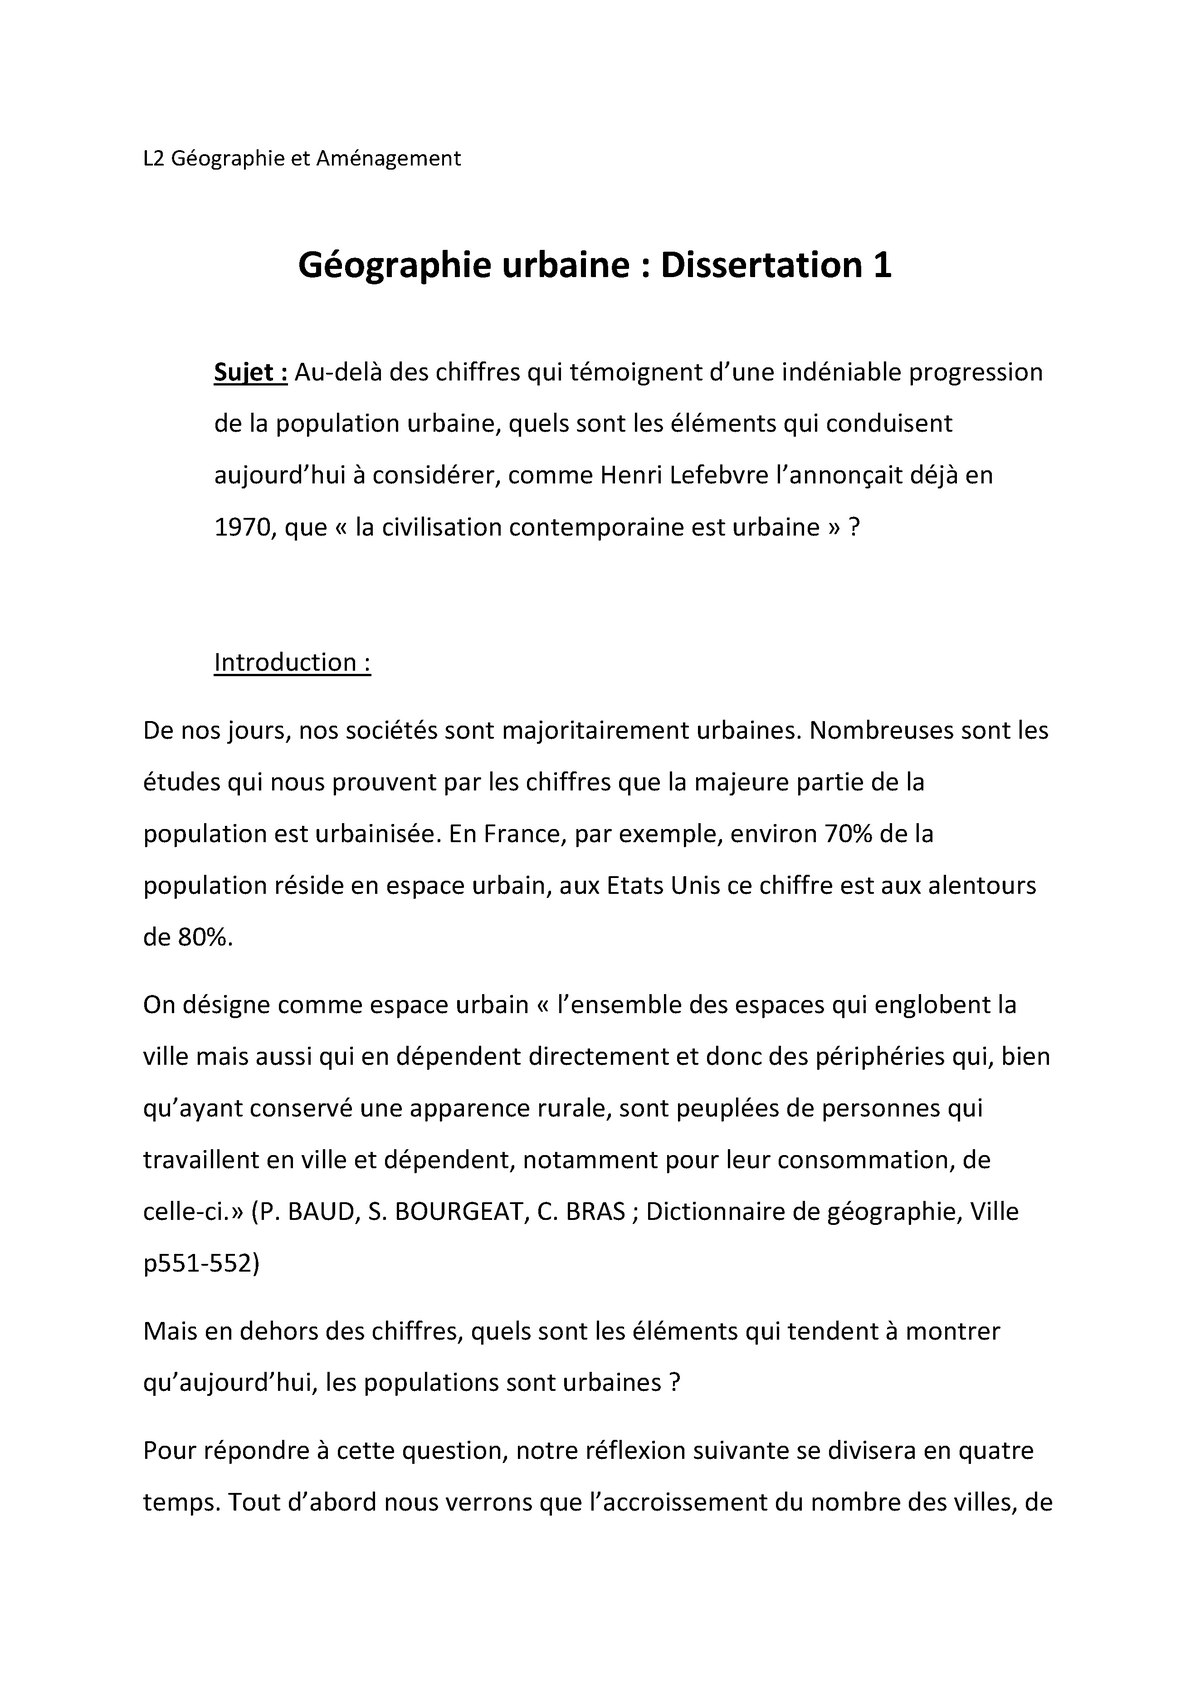 PDF Télécharger exemple de dissertation en géographie Gratuit PDF